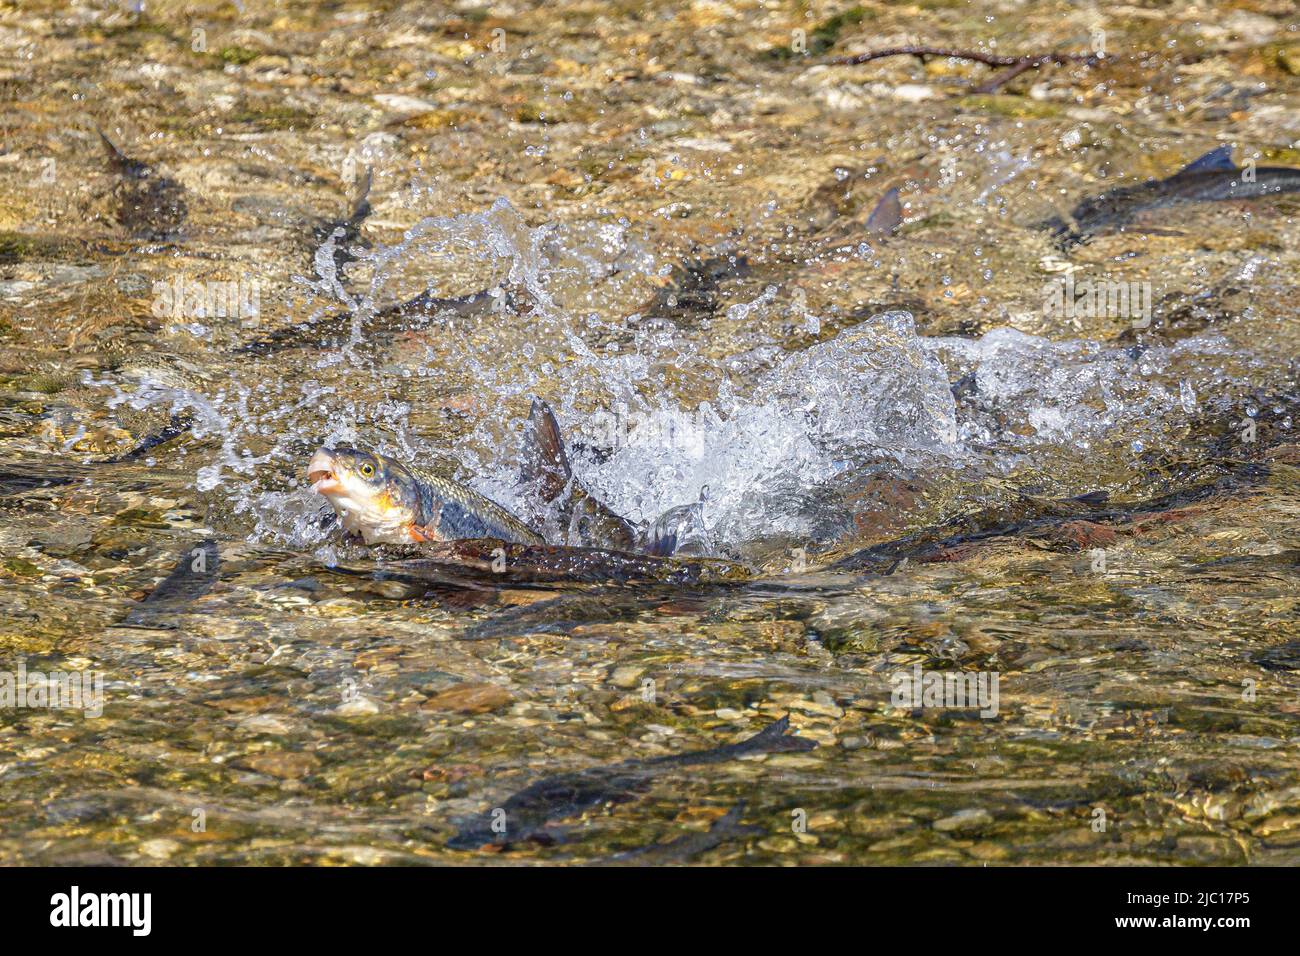 Nase (Chondrostoma naso), desove, salto de delfín de la hembra después de poner huevos, Alemania, Baviera, Mangfall Foto de stock